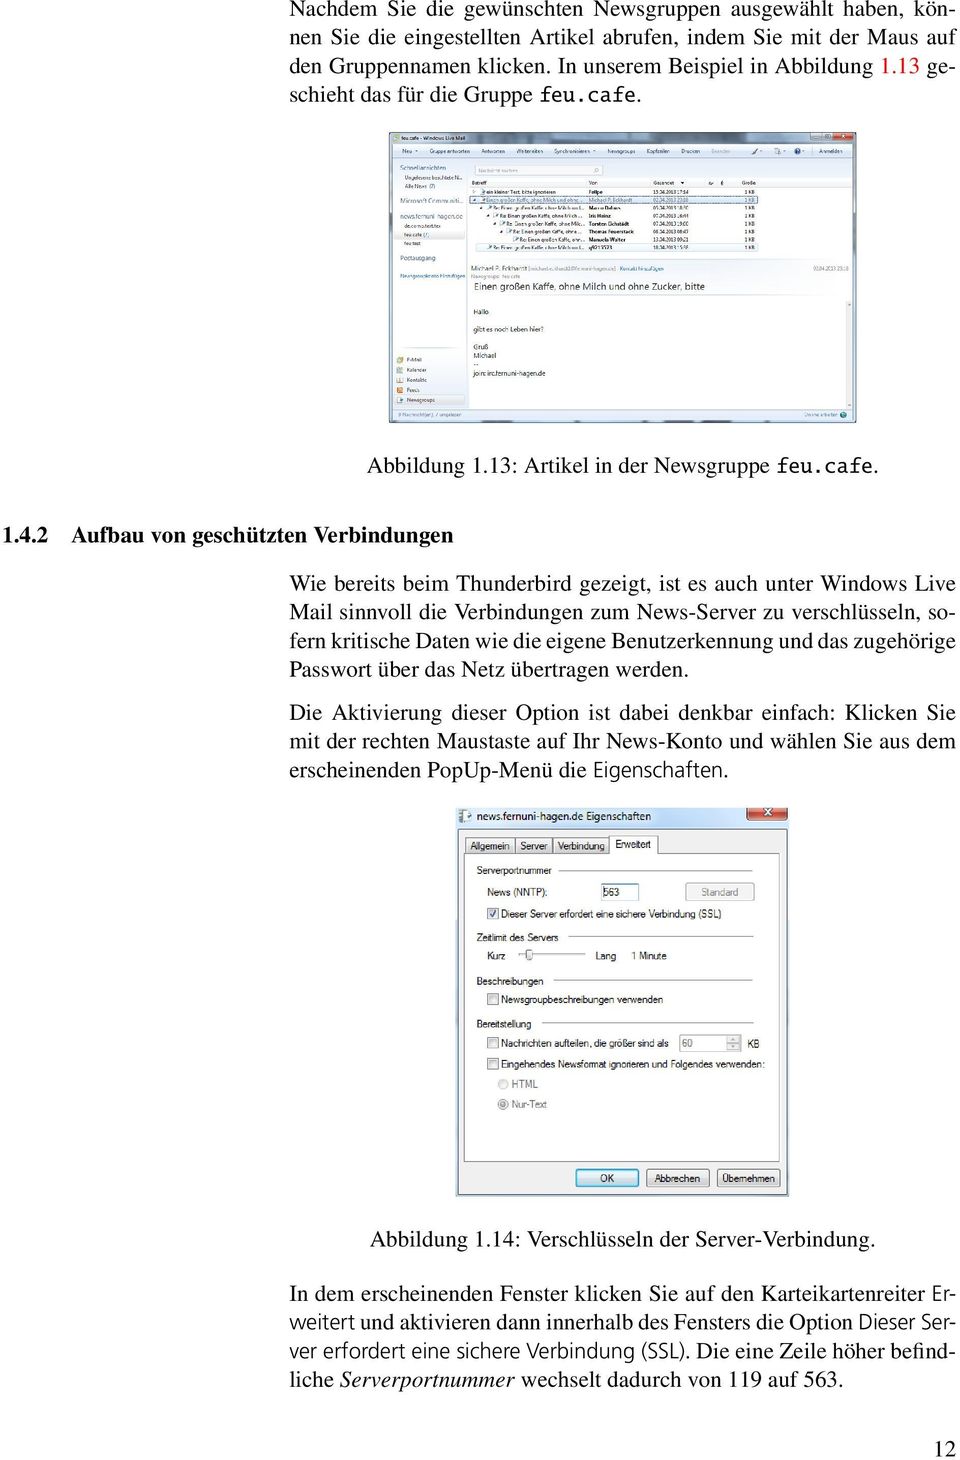 2 Aufbau von geschützten Verbindungen Wie bereits beim Thunderbird gezeigt, ist es auch unter Windows Live Mail sinnvoll die Verbindungen zum News-Server zu verschlüsseln, sofern kritische Daten wie